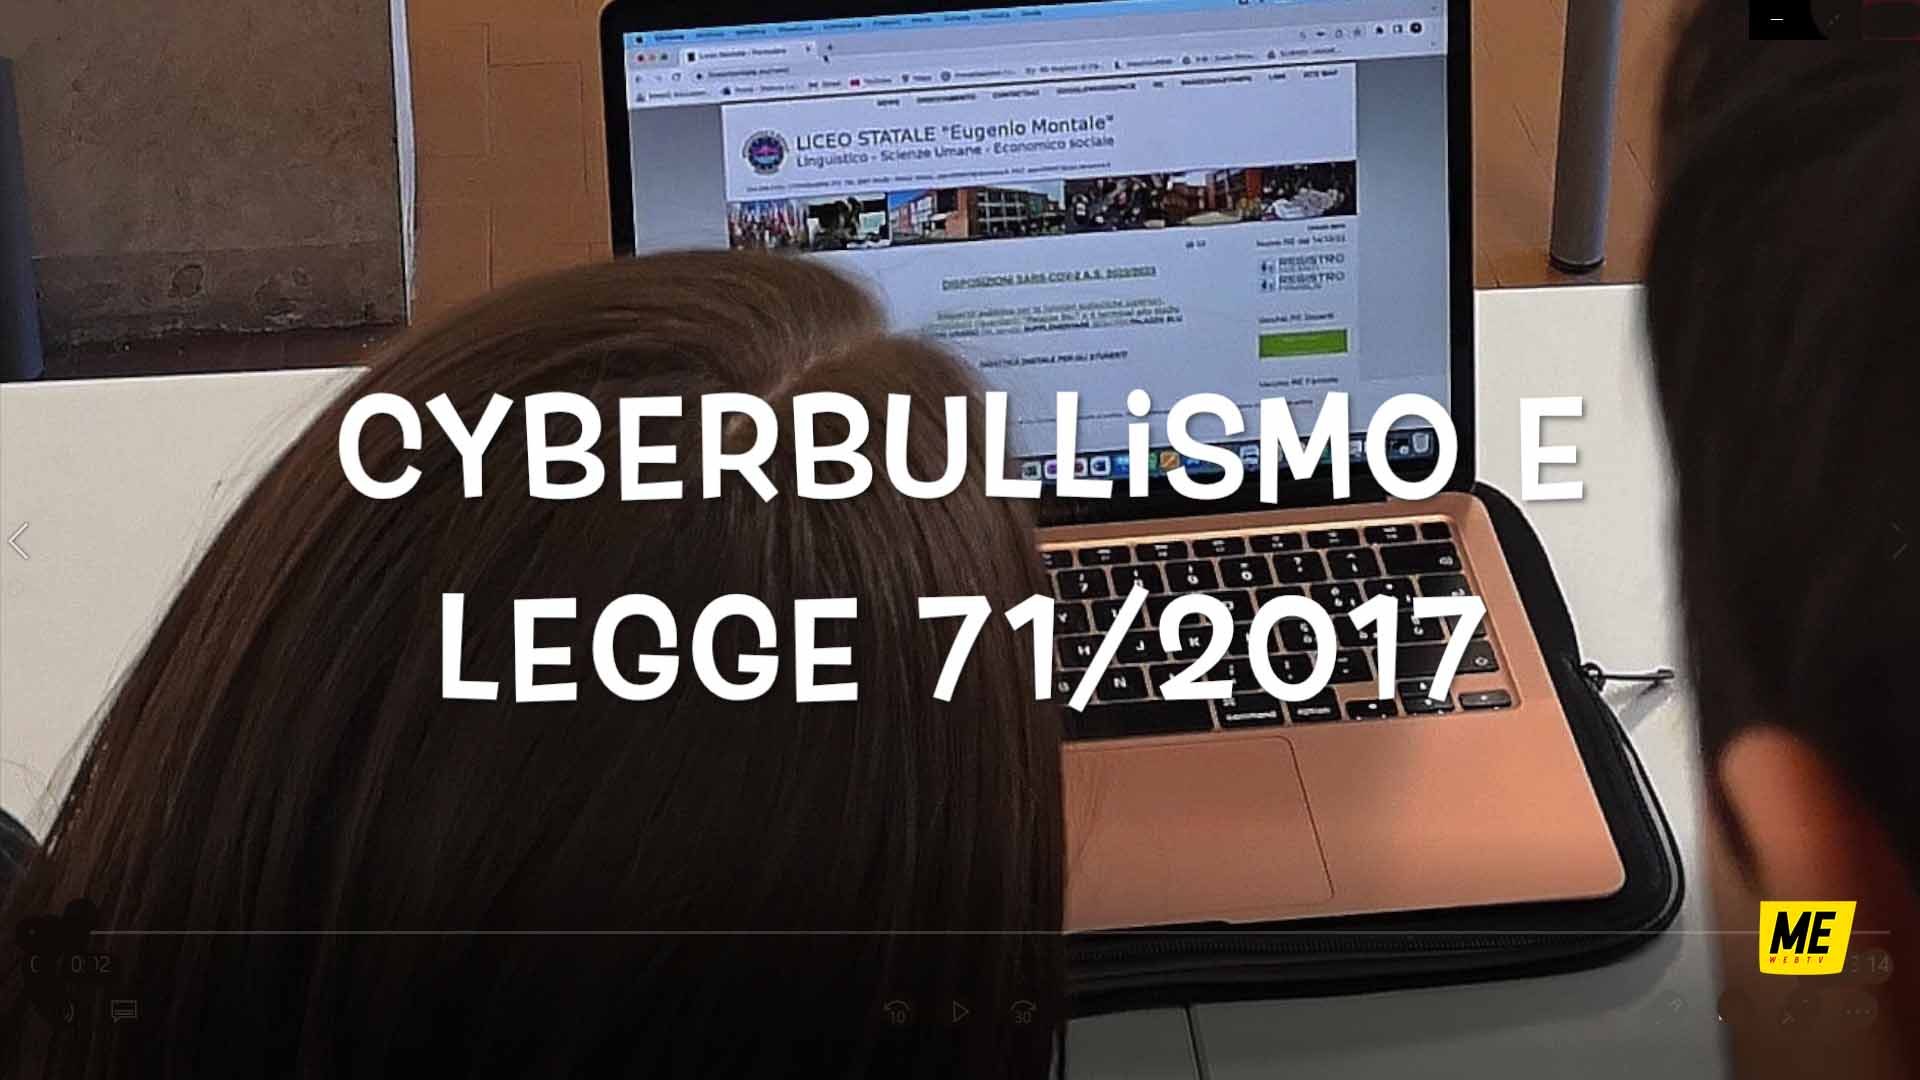 Cyberbullismo e Legge_MessinaWebTv_Società